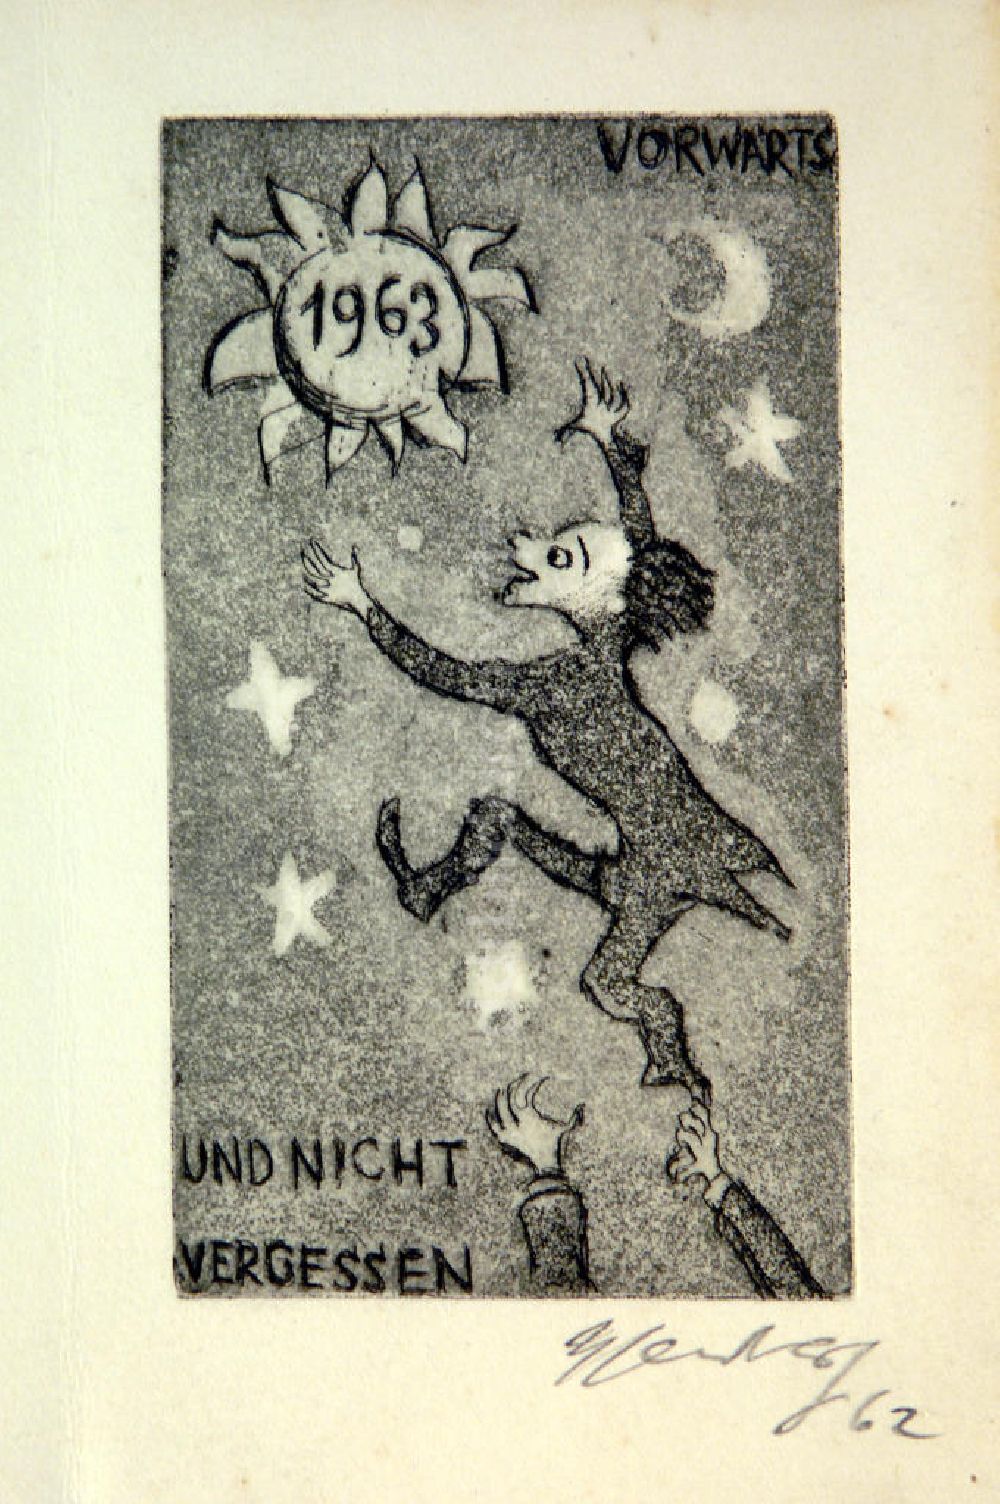 DDR-Fotoarchiv: Berlin - Grafik von Herbert Sandberg Vorwärts und nicht vergessen (Neujahrsgraphik) aus dem Jahr 1962